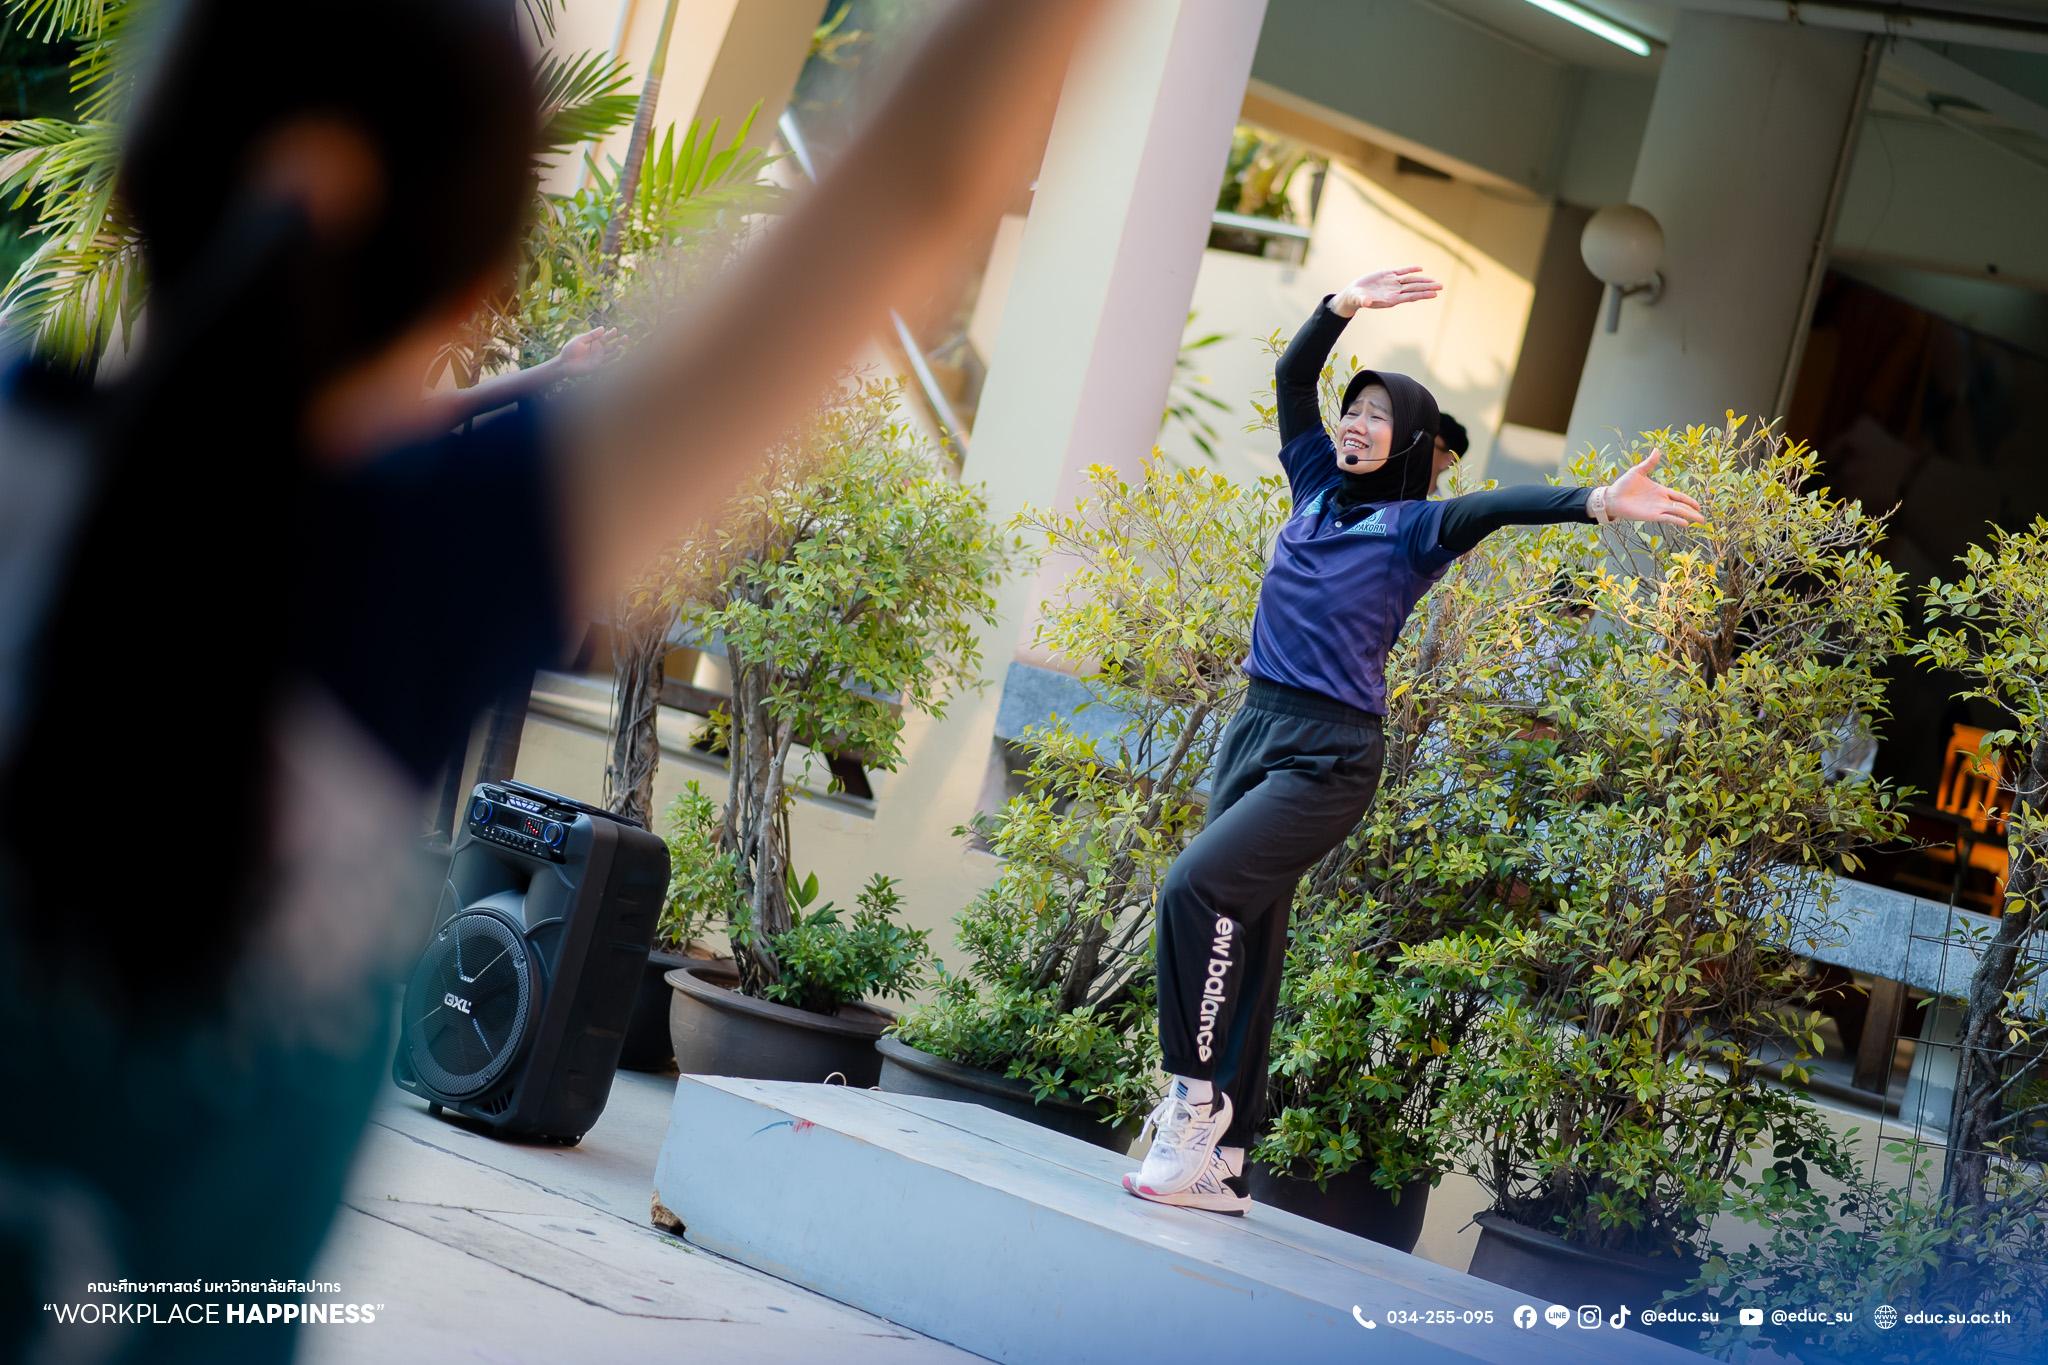 คณะศึกษาศาสตร์ มหาวิทยาลัยศิลปากร จัดโครงการAerobic Dance บุคลากรศึกษาศาสตร์ FIT&FIRM